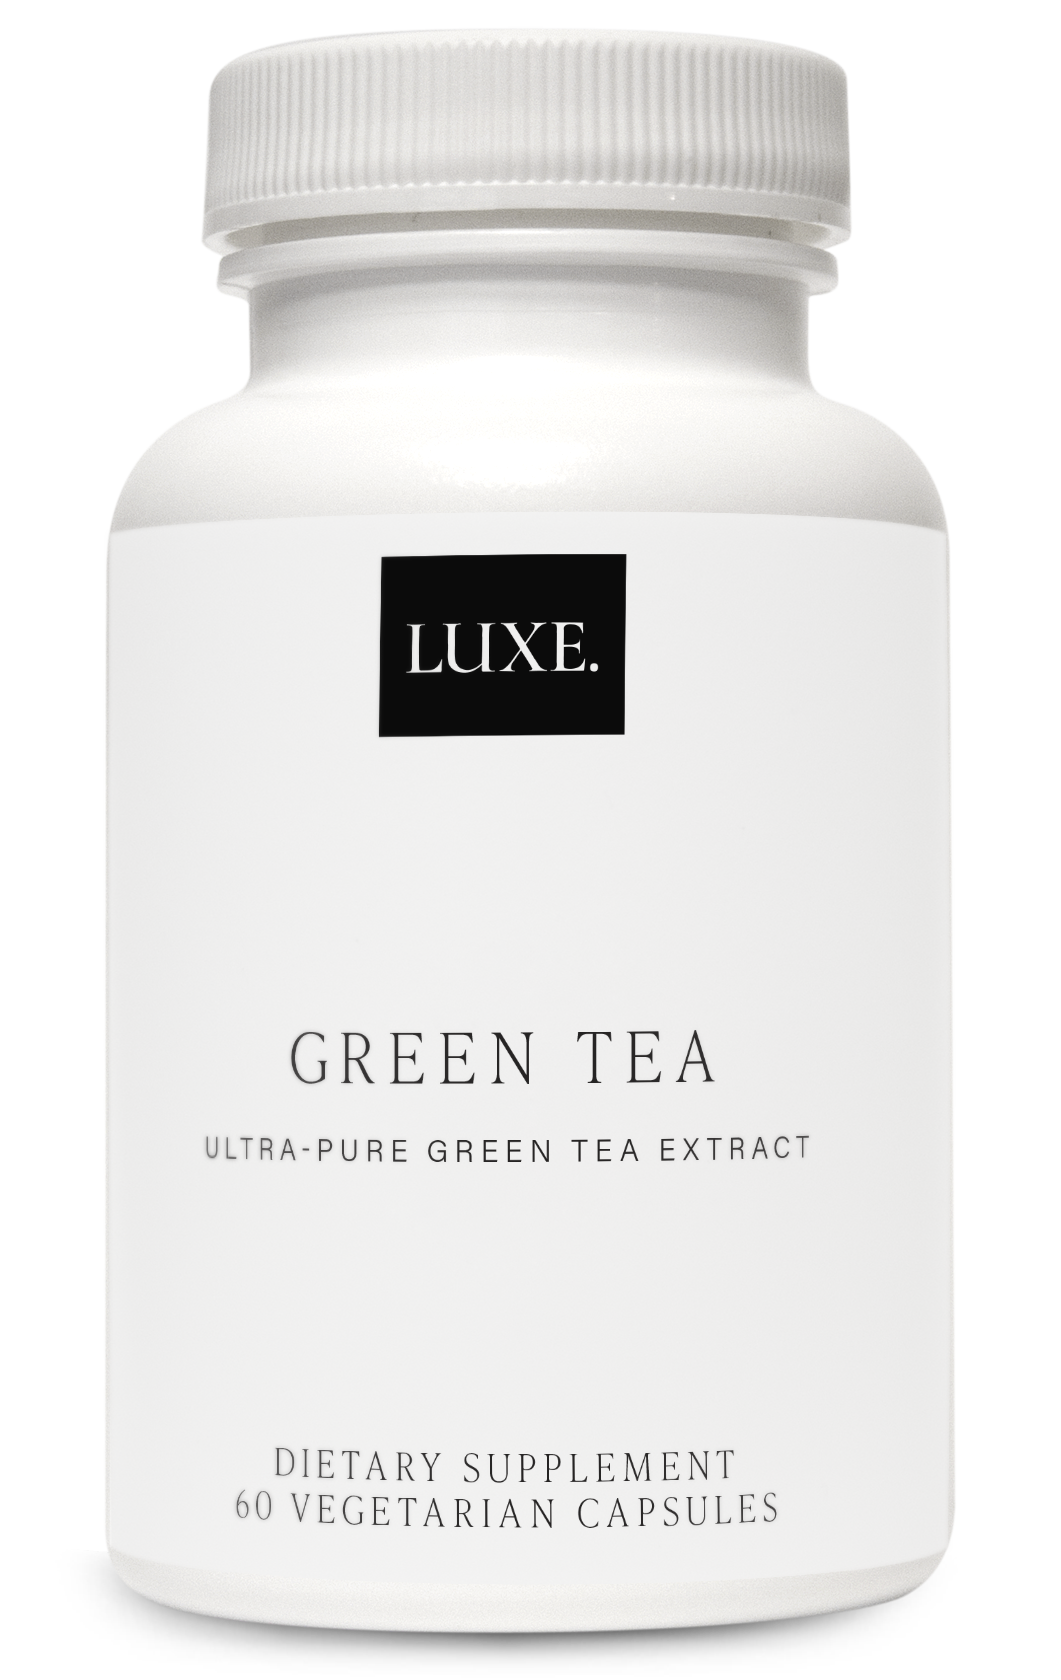 LUXE., Green Tea